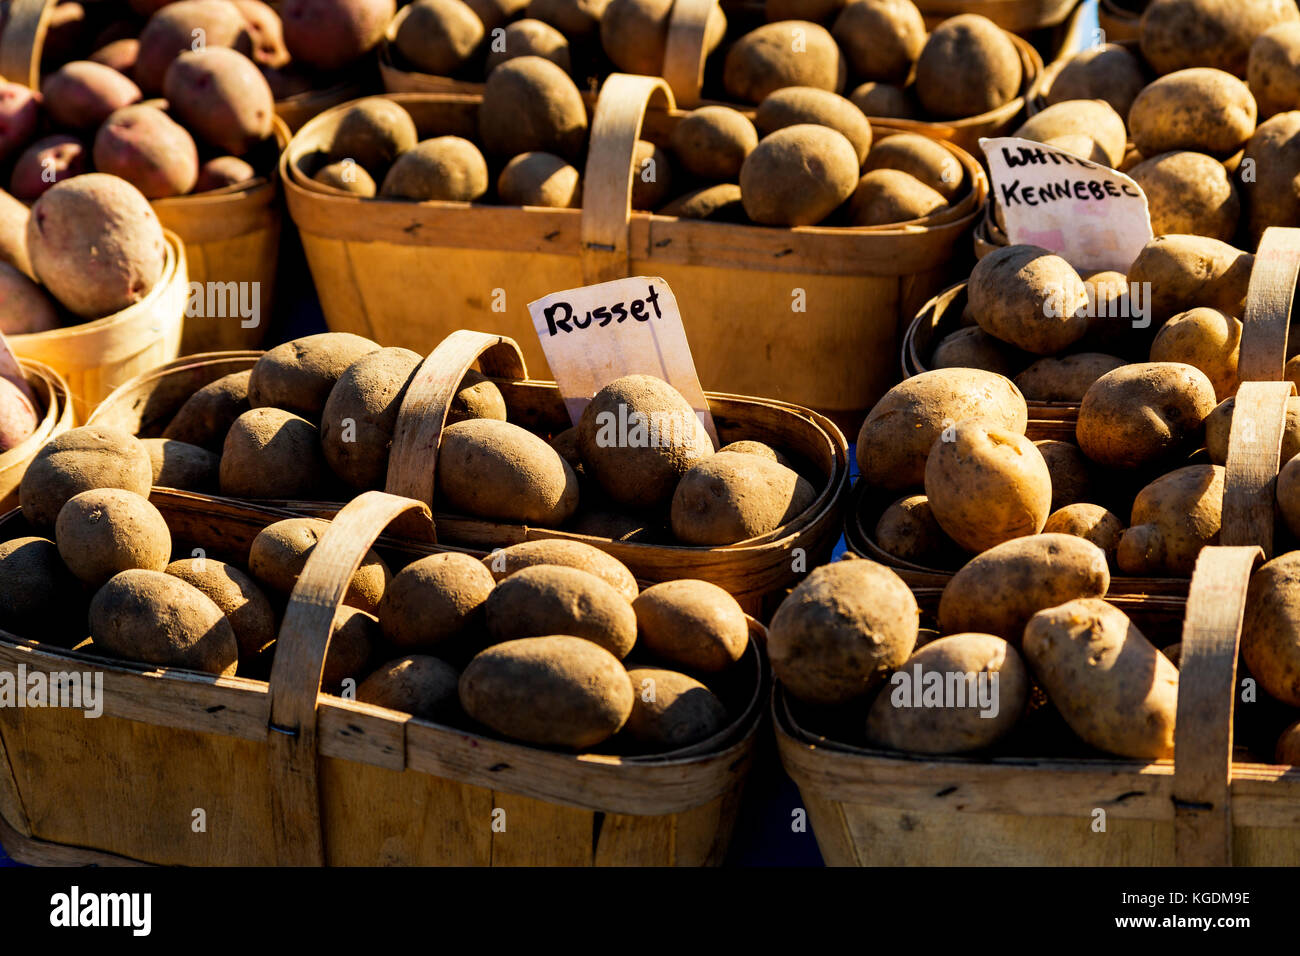 Nouvelles pommes de terre Russet à vendre sur le stand du marché. Marché St. Jacobs Ontario Canada Banque D'Images